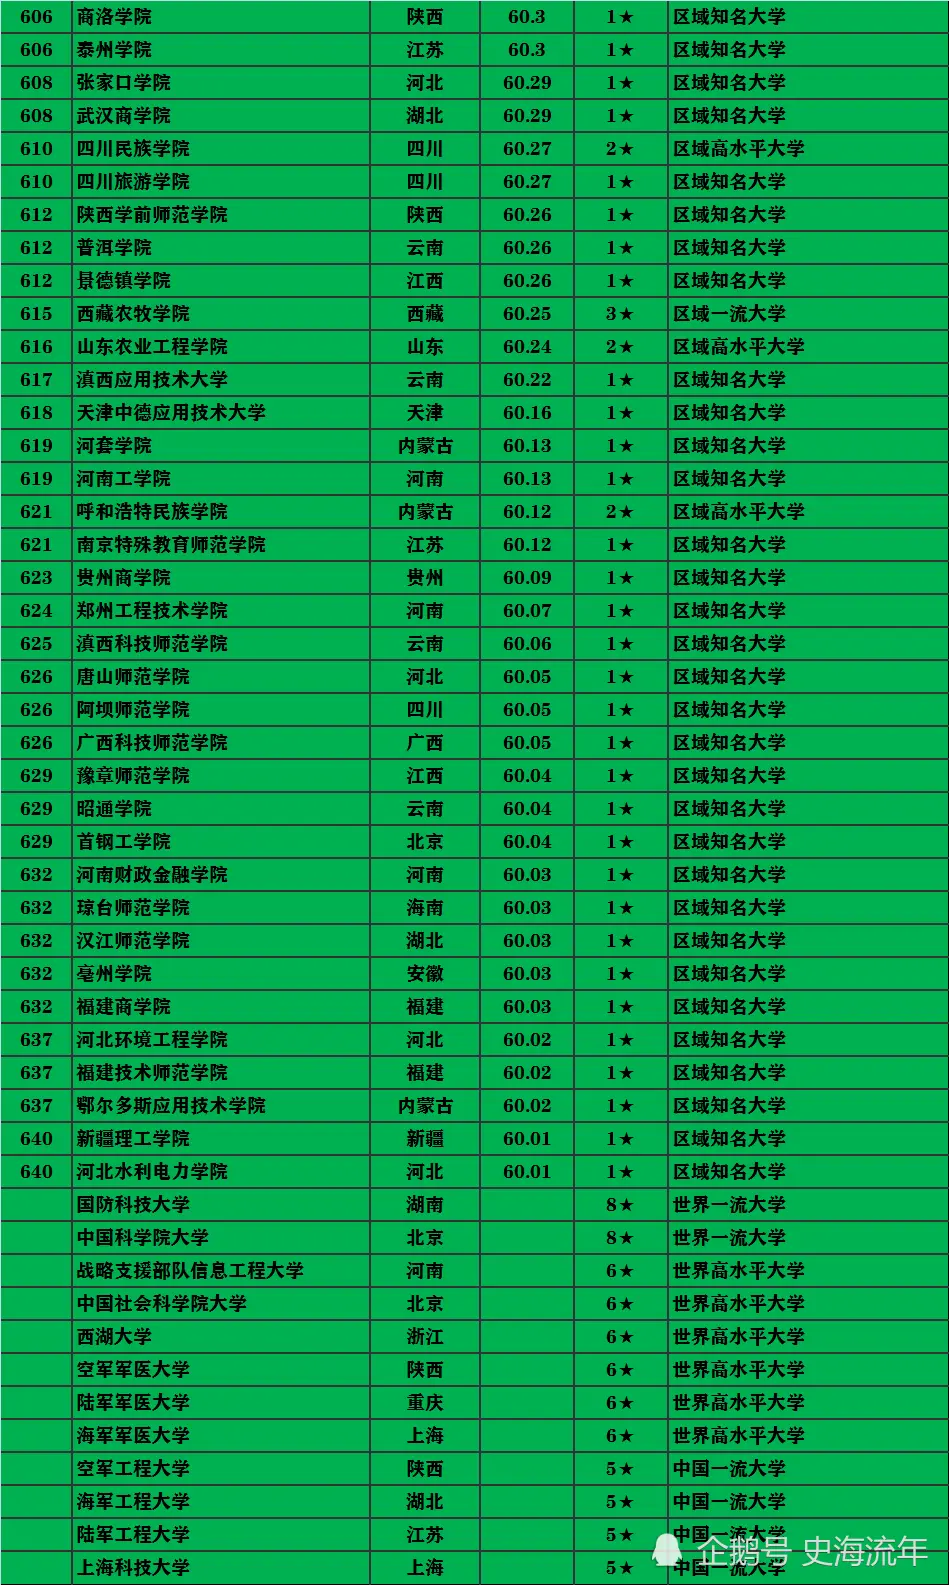 832所高校排行榜！北大超清华，复旦超浙大，北京协和第50！